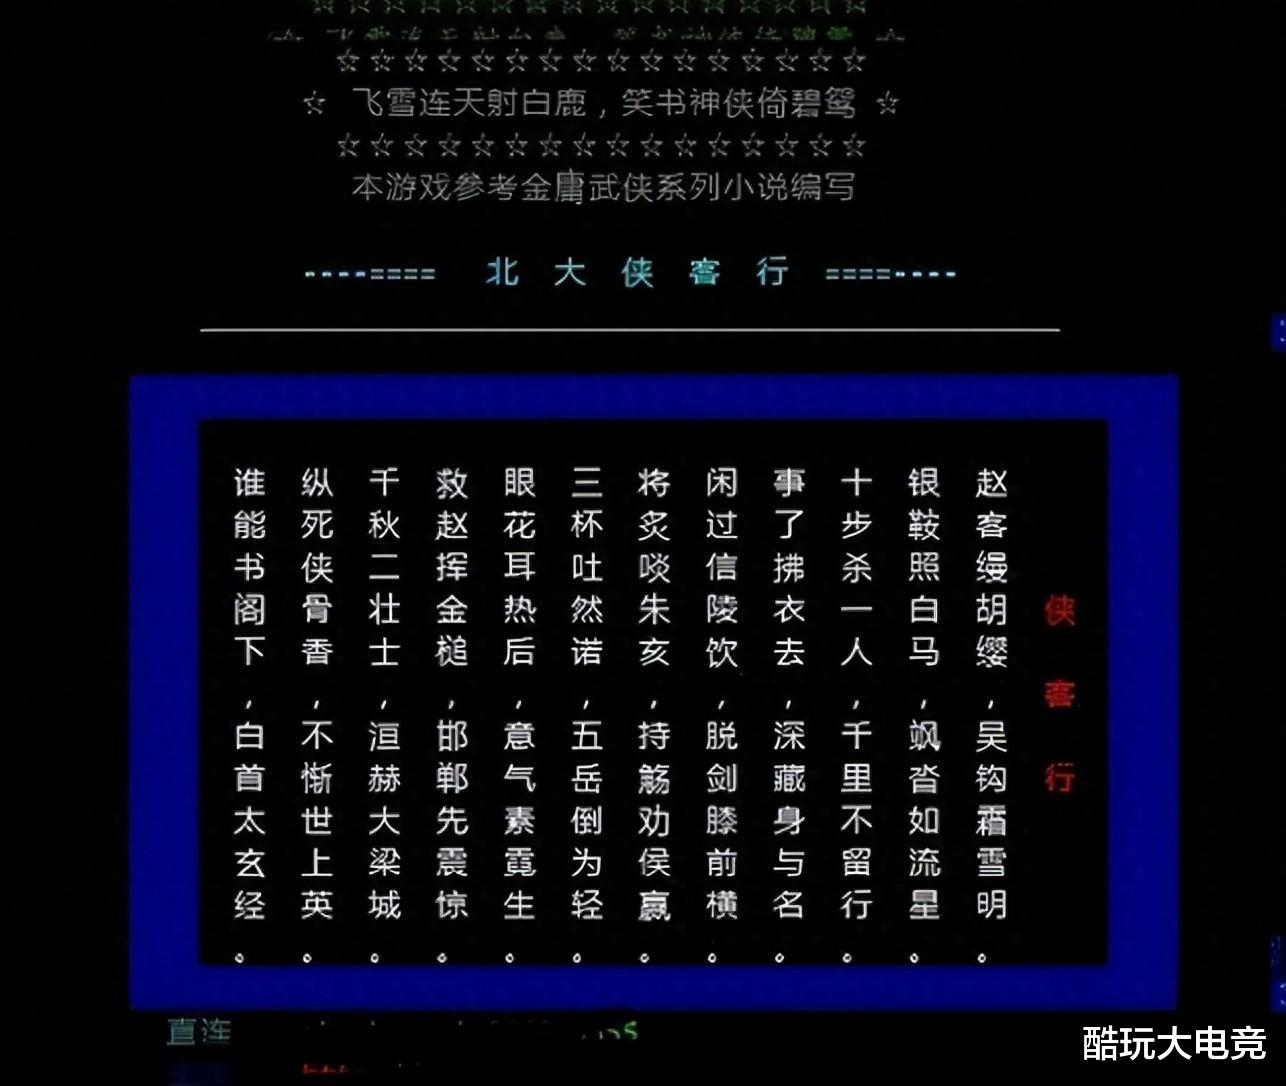 史上影响最为深远的几款中国网游 都是一代老玩家的回忆